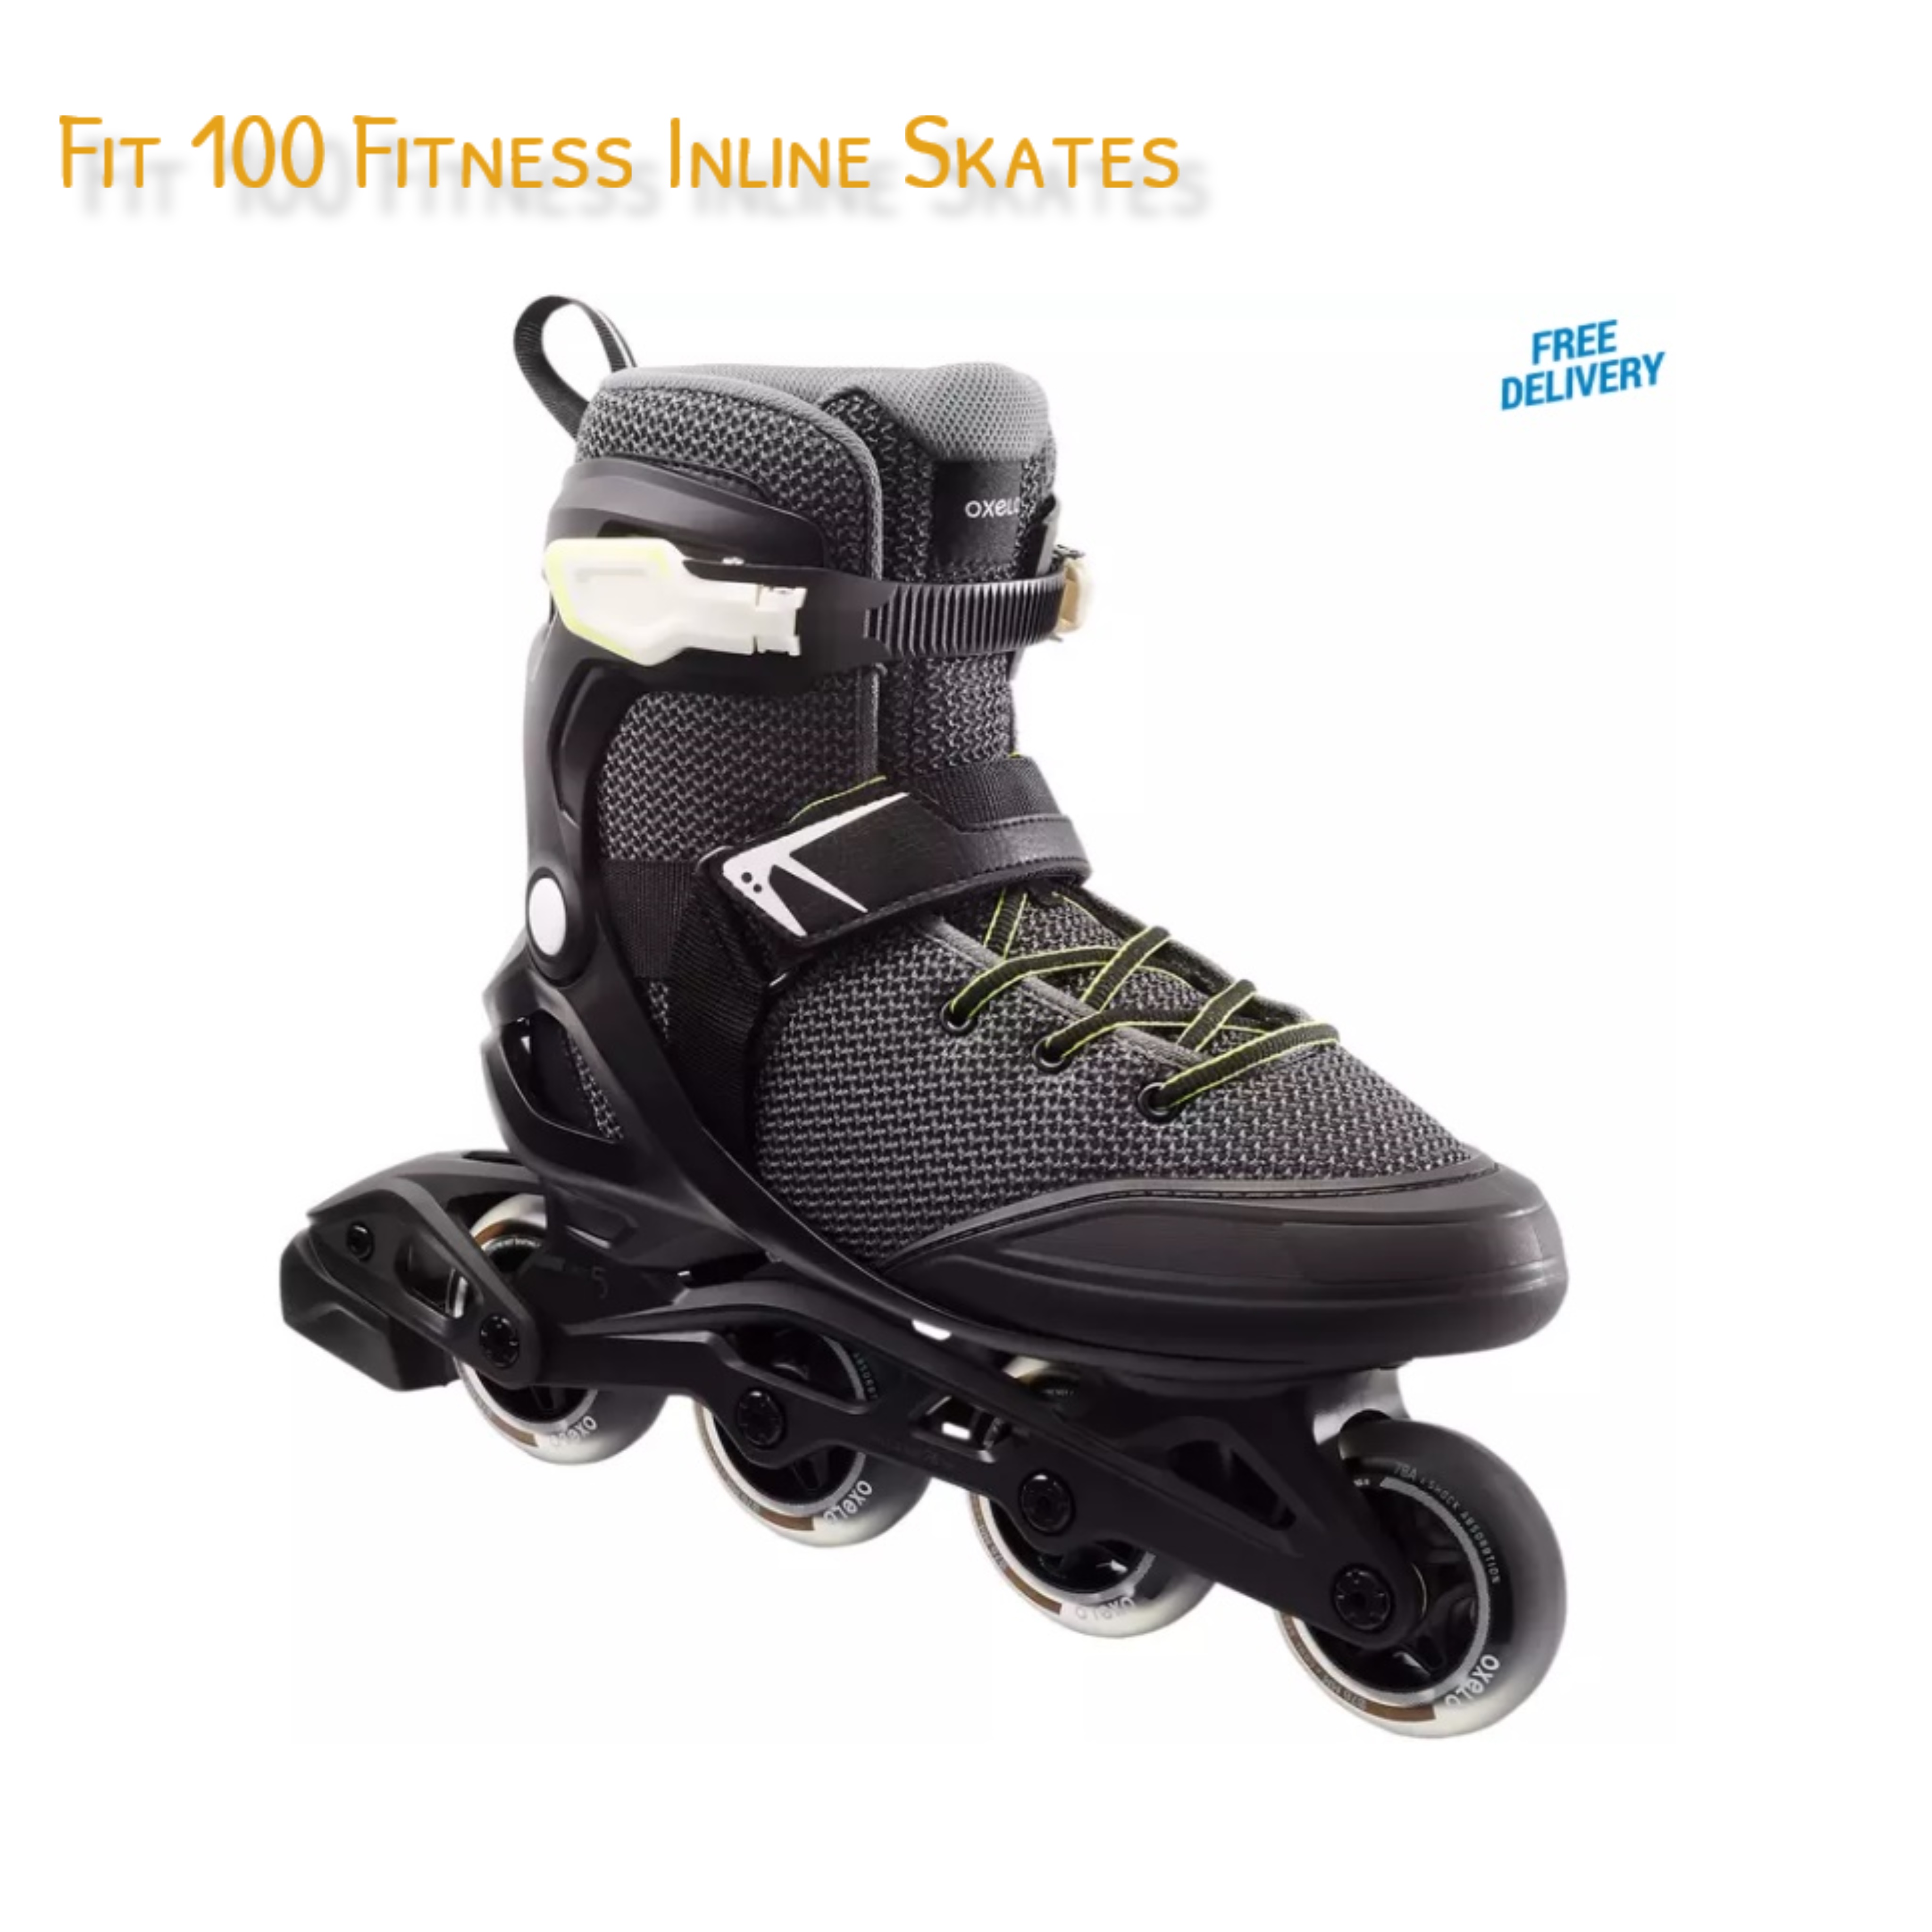 รองเท้า อินไลน์สเก็ต เพื่อการออกกำลังกาย รุ่น Fit100 Fitness Inline Skates